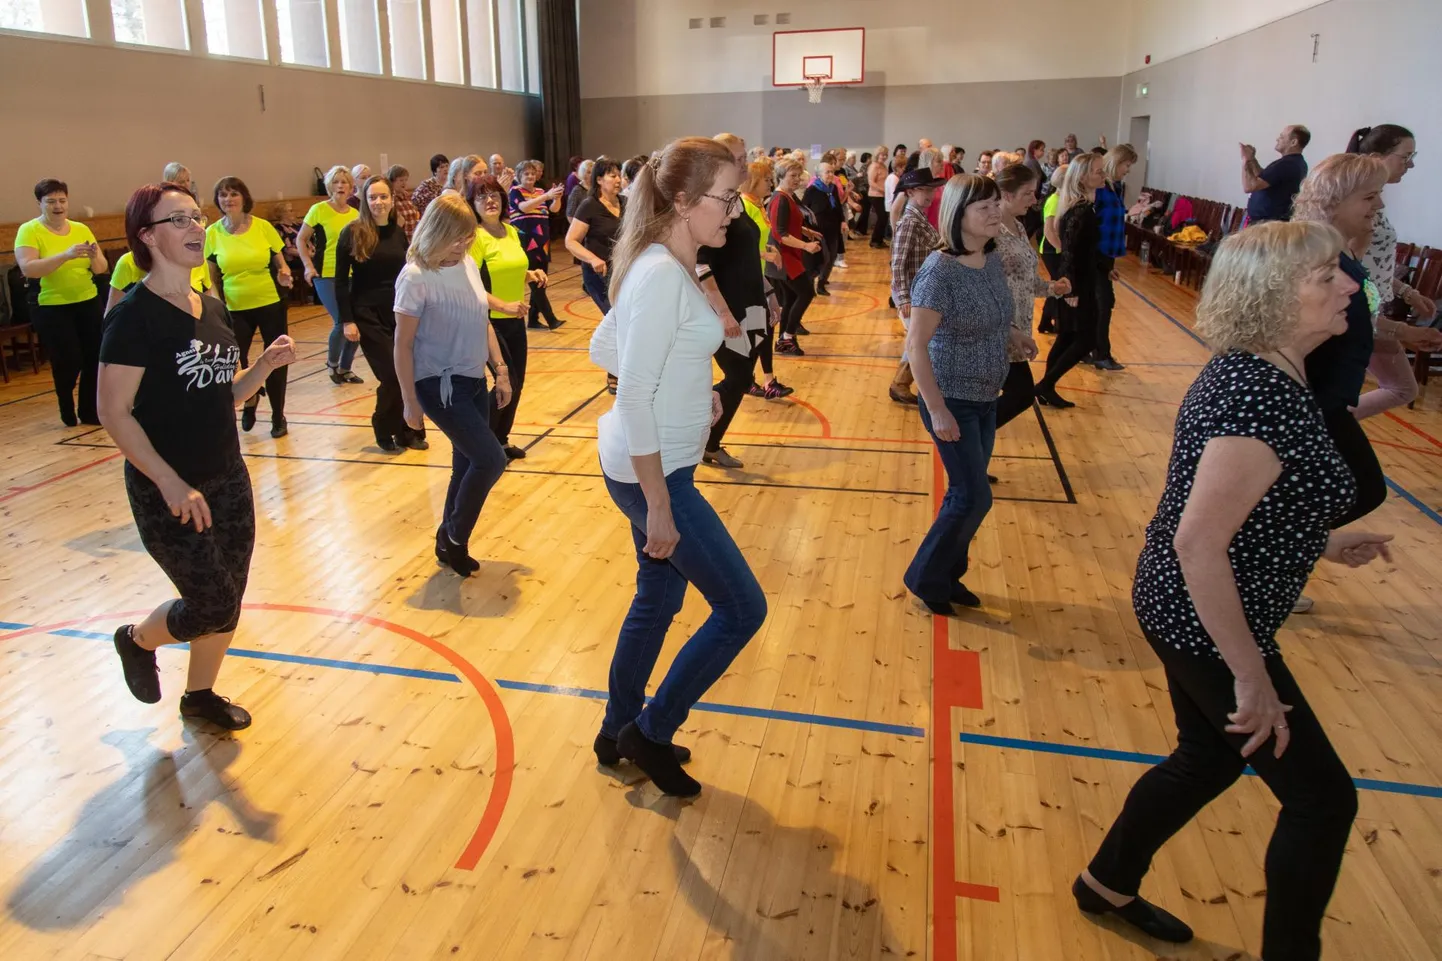 Viljandimaal peetava üle-eestilise line-tantsu ehk rivitantsu päeva traditsiooniliseks toimumiskohaks on kujunenud Saarepeedi rahvamaja.